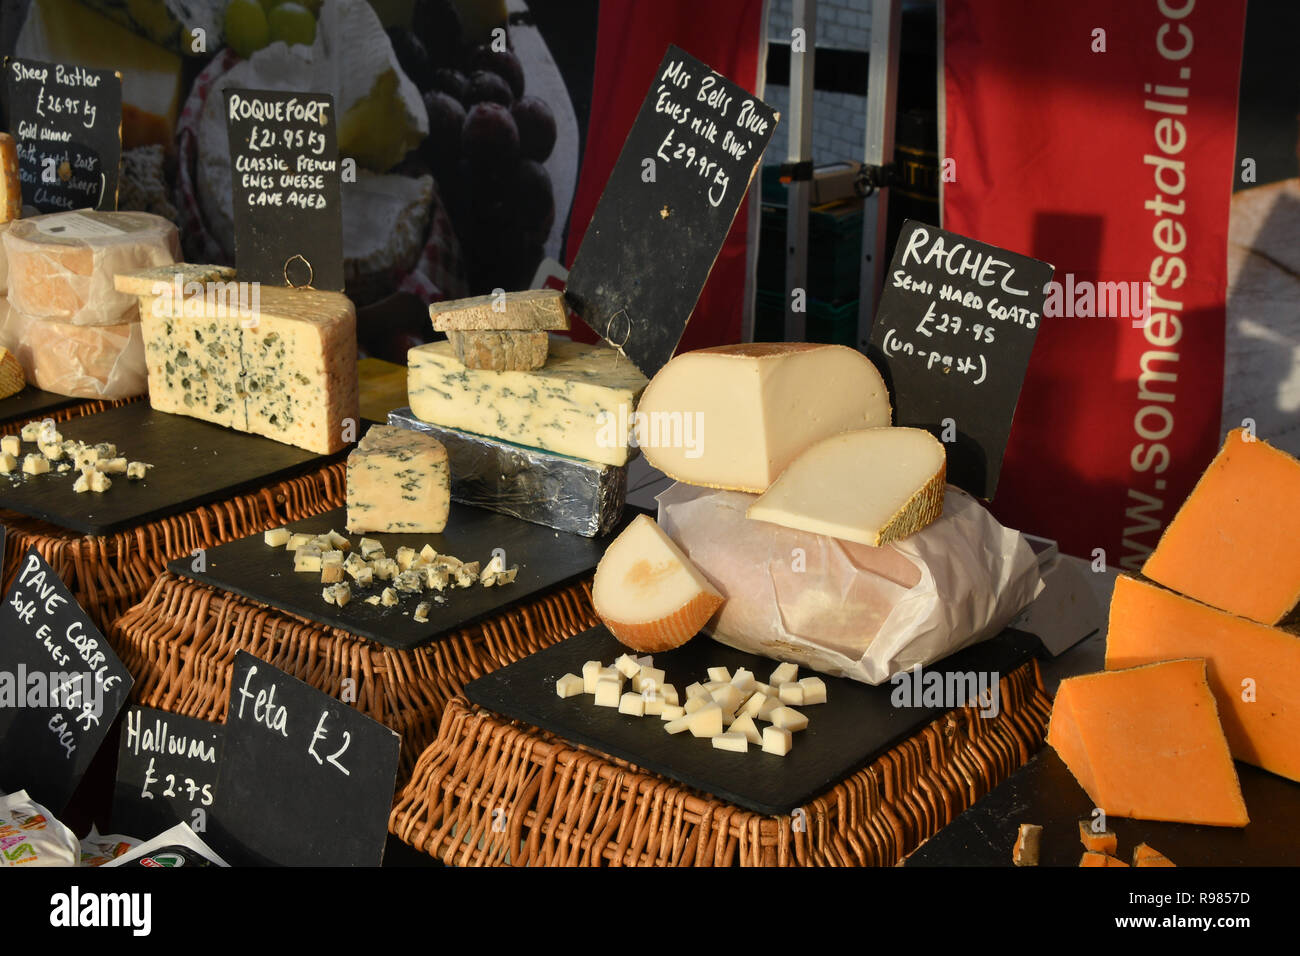 Fromages sur market stall dans Somerset affiché avec échantillons pour dégustation.Roquefort,Mme Bells Blue brebis lait et fromage au lait de chèvre de Rachel. Angleterre, Royaume-Uni Banque D'Images